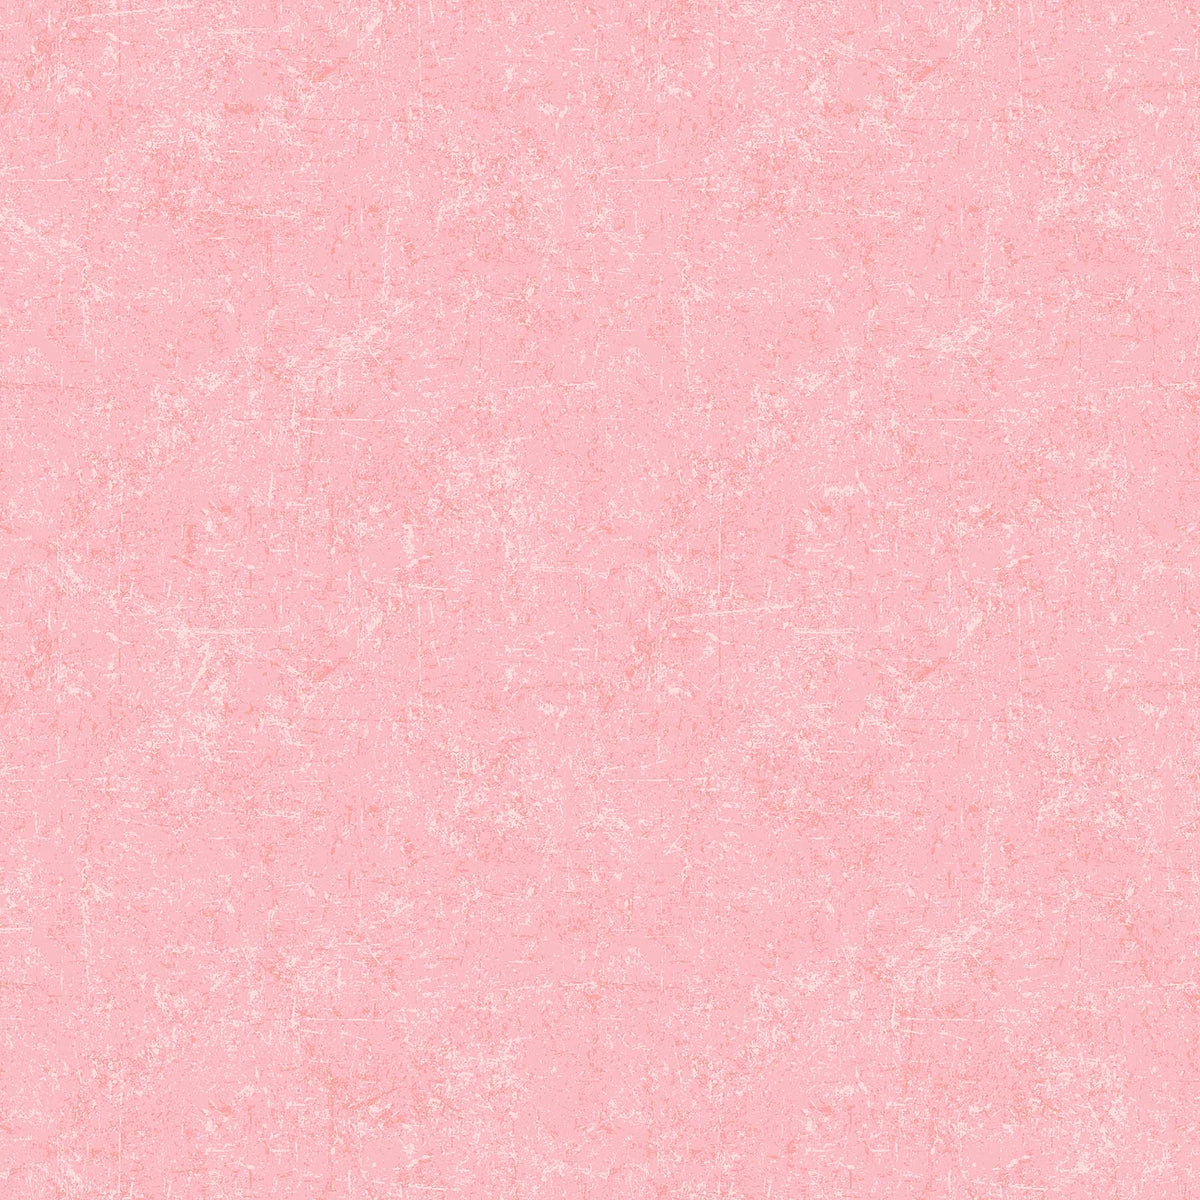 Glisten Sorbet Quilt Fabric - Blender in Cherry Vanilla Pink - P10091-20